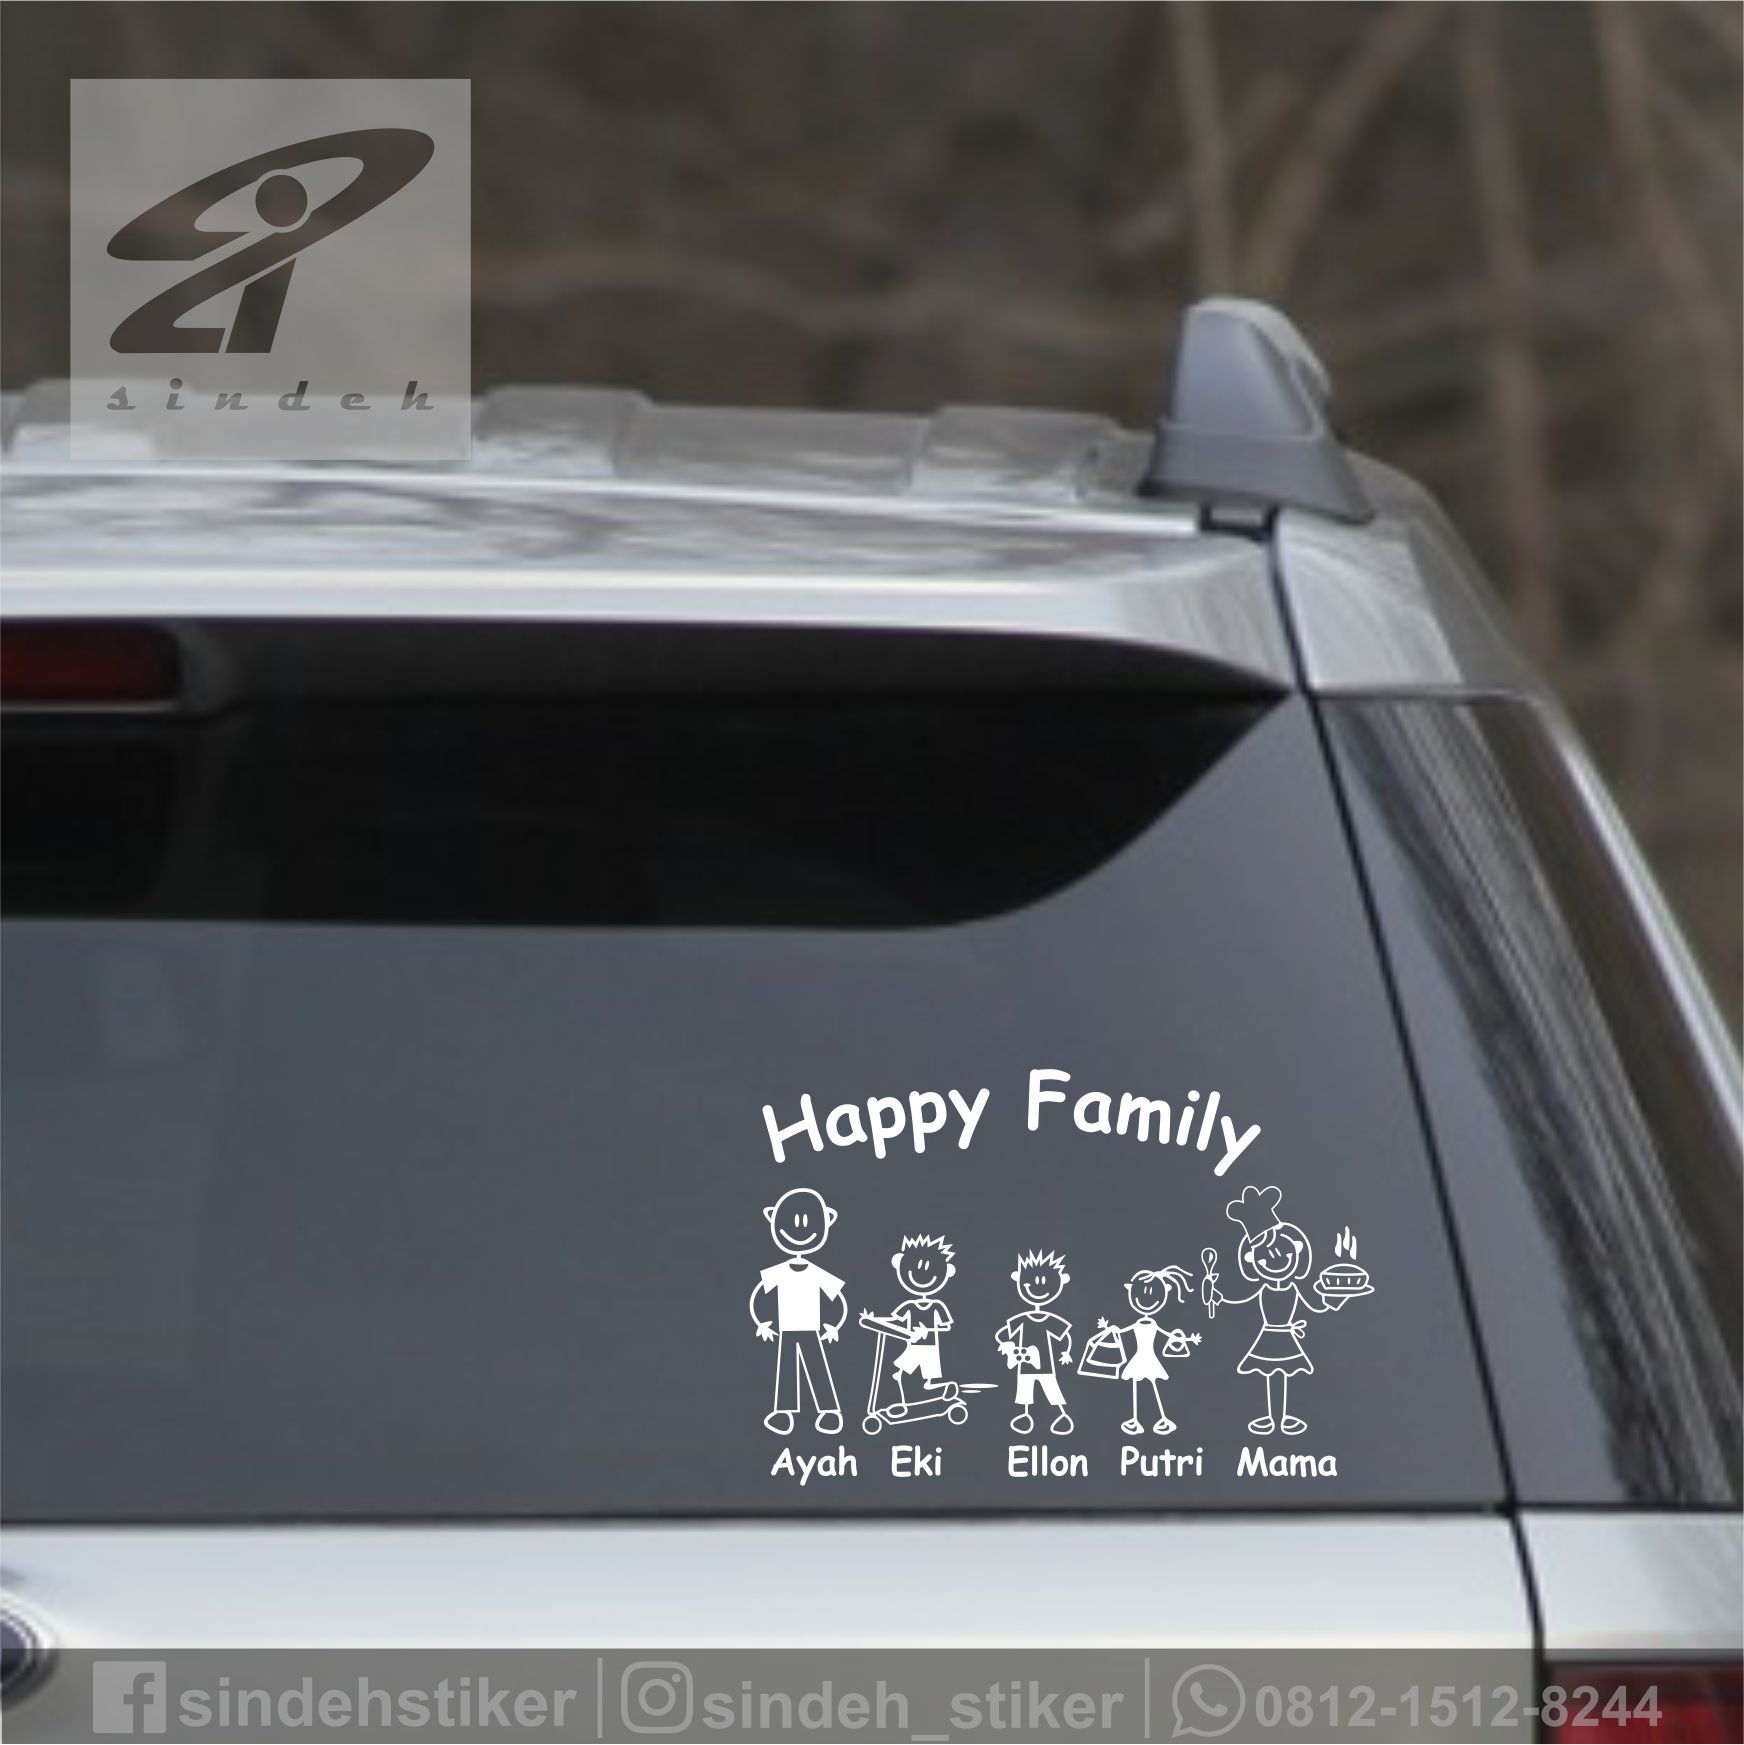 Anda Sering Melihat Stiker Gambar Anggota Keluarga di Kaca Mobil? Ternyata Bahaya!